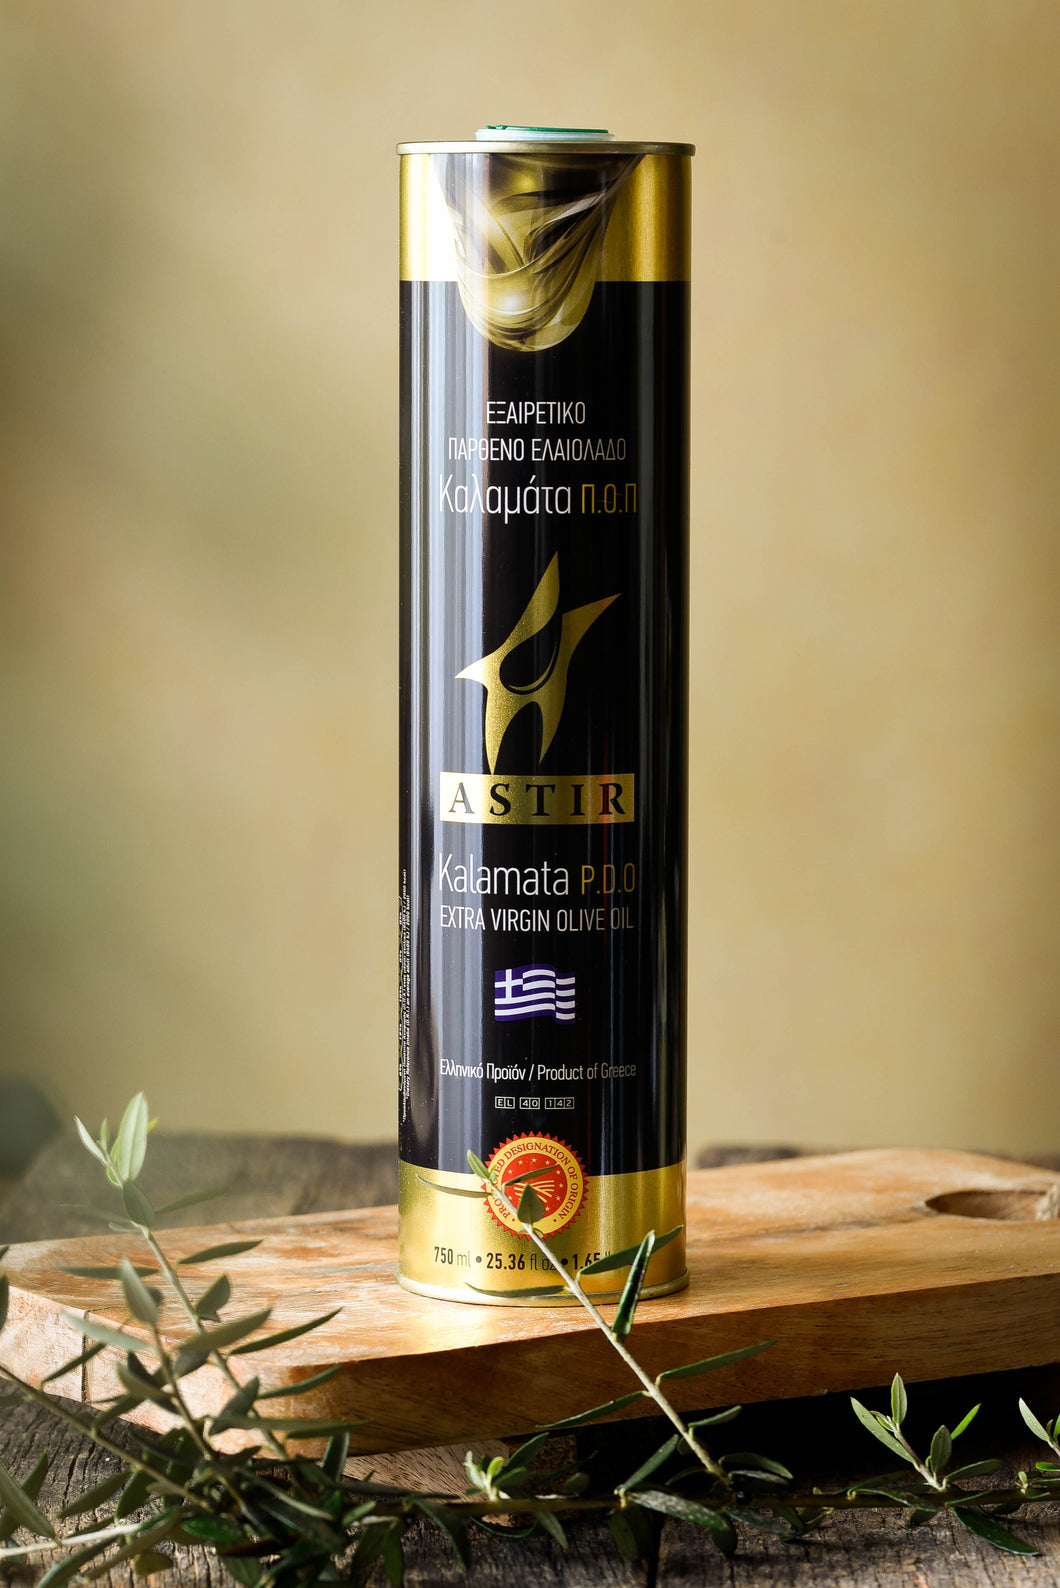 ASTIR - Huile d'olive extra vierge Kalamata AOP (750ml) - Les produits du soleil